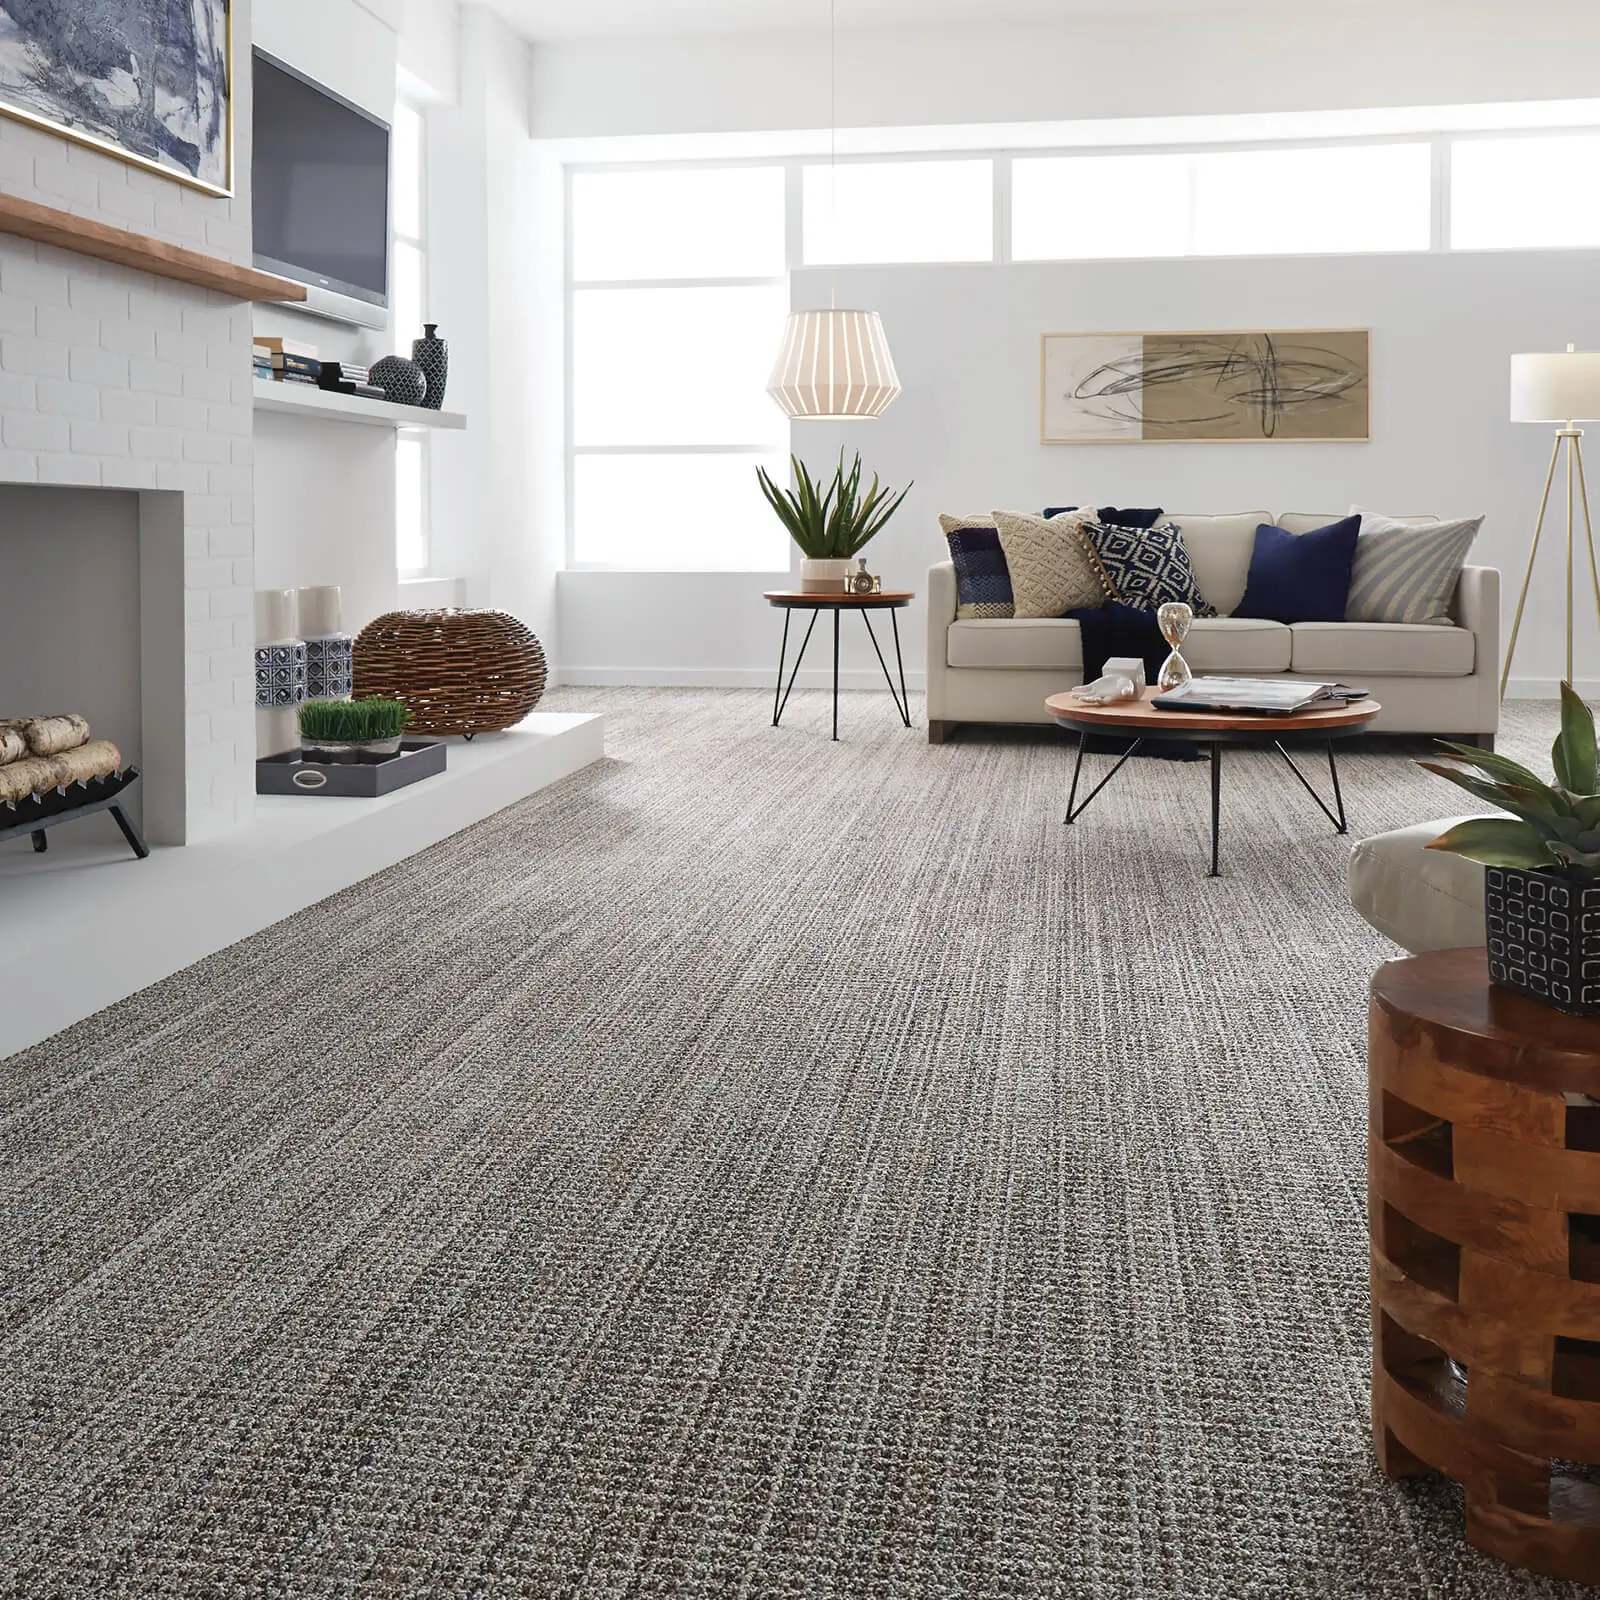 Carpet Tiles for Residential Homes